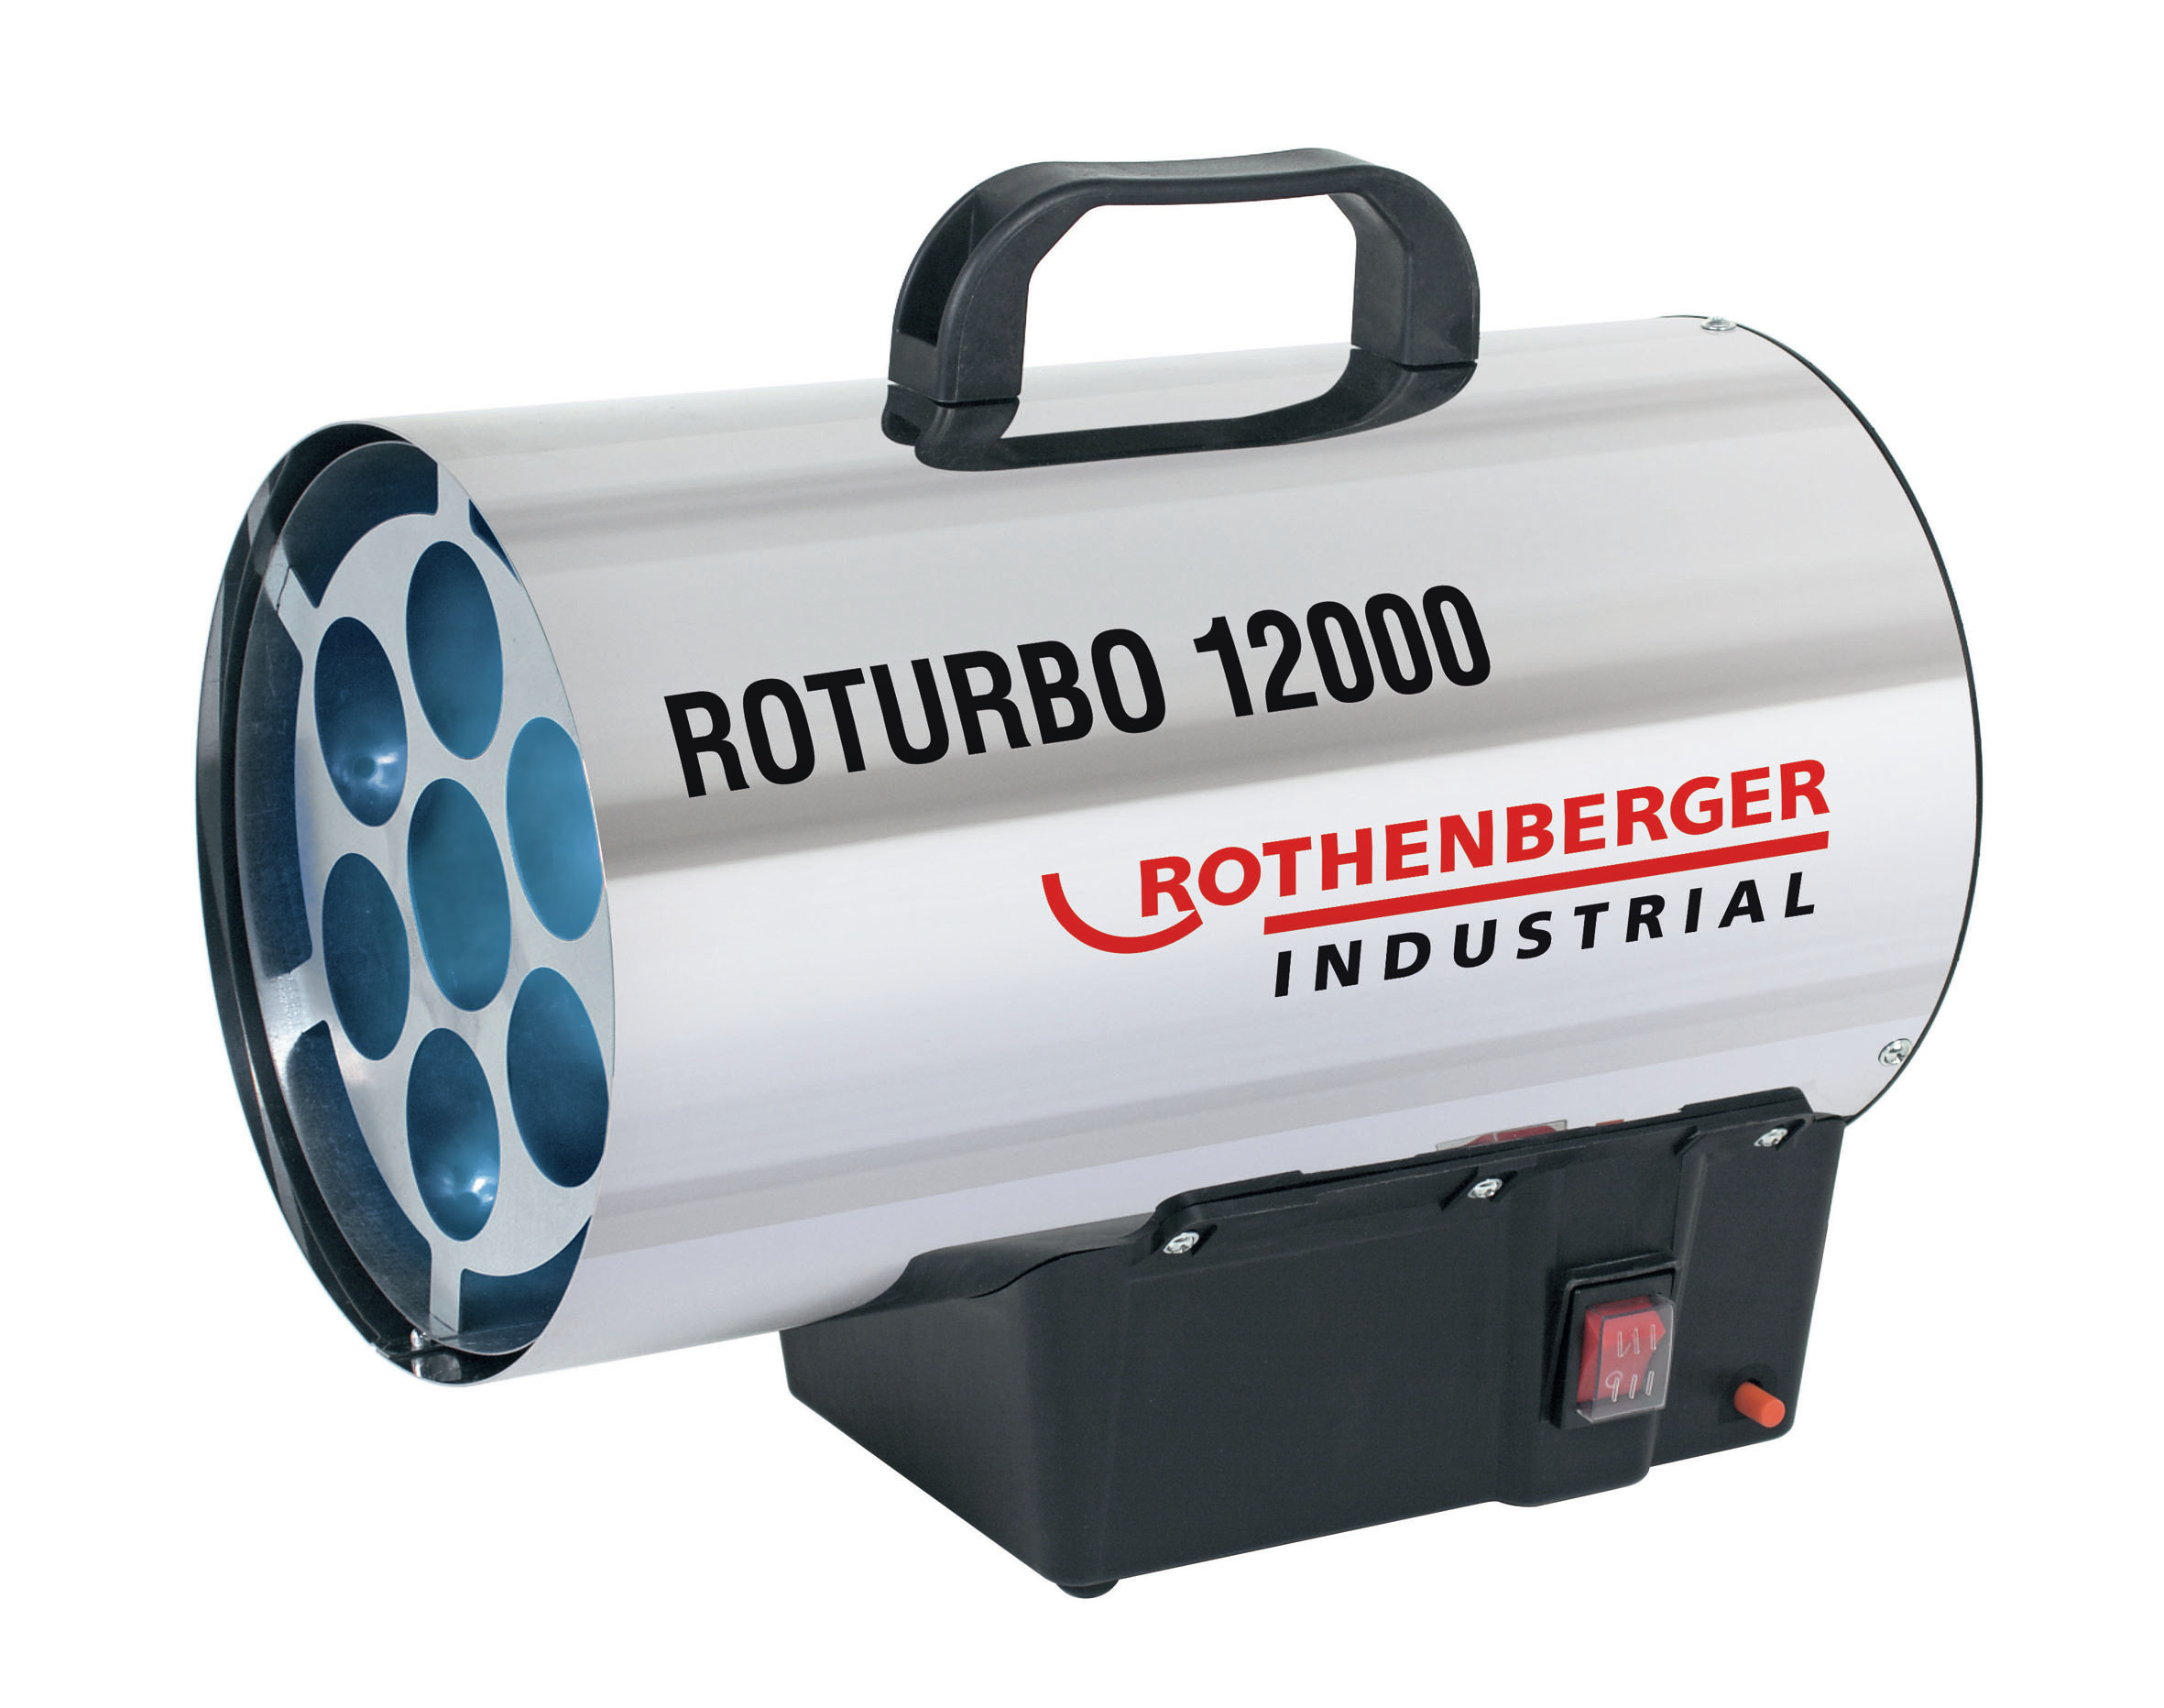 Générateur d'air chaud à gaz Roturbo 12000 12kW - ROTHENBERGER